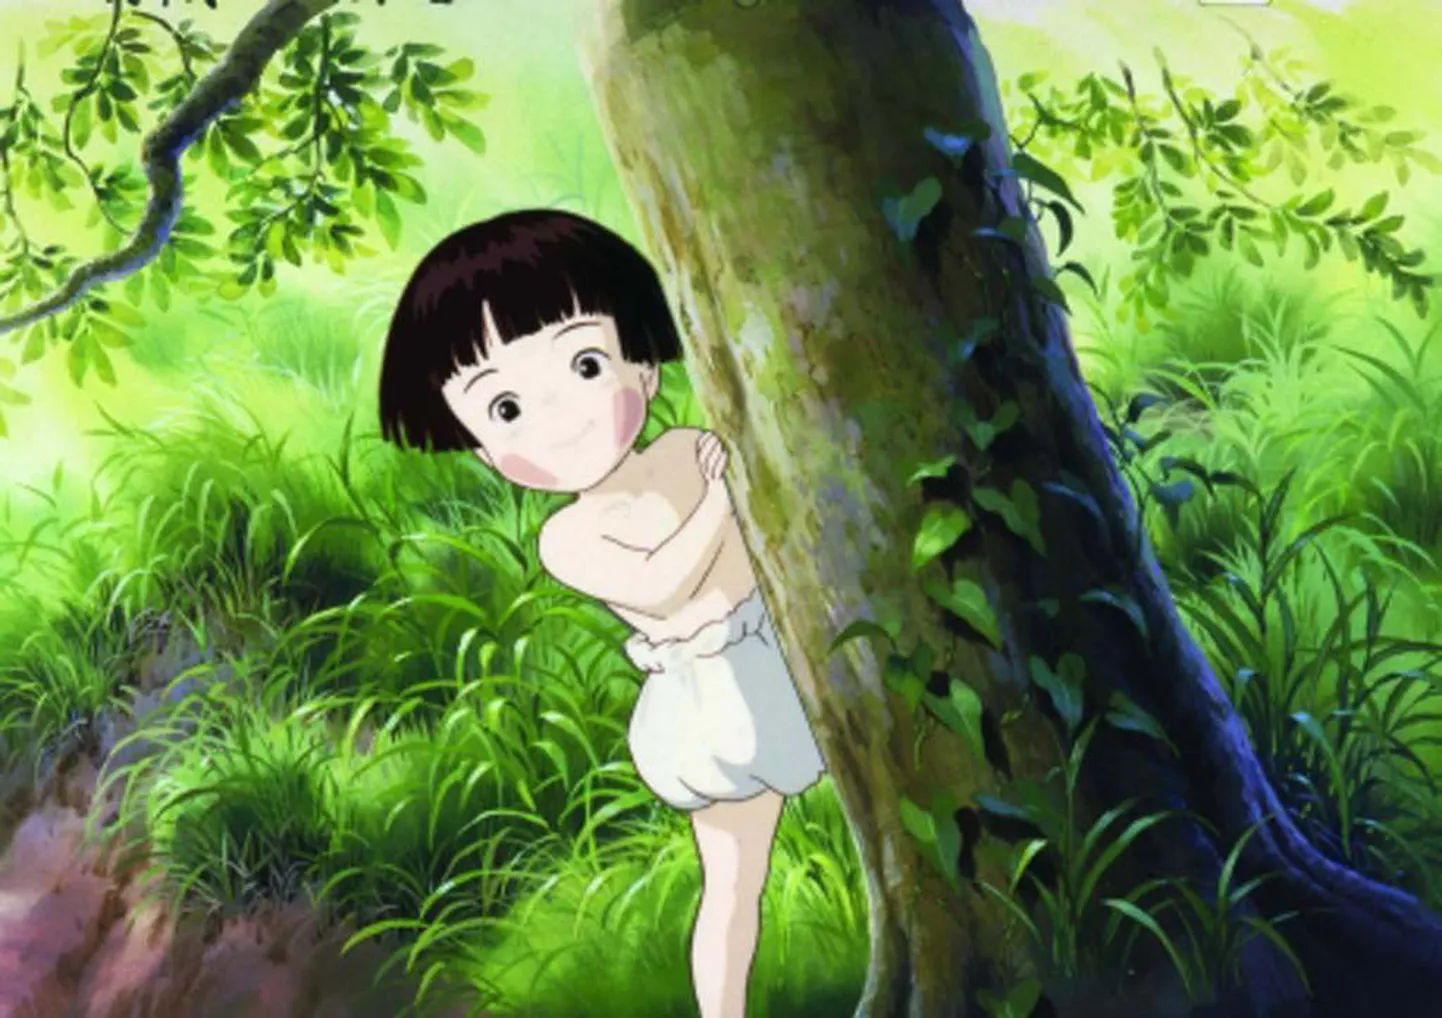 Jaapanlase Isao Takahata lavastatud animafilm täiskasvanutele „Jaanimardikate haud”.